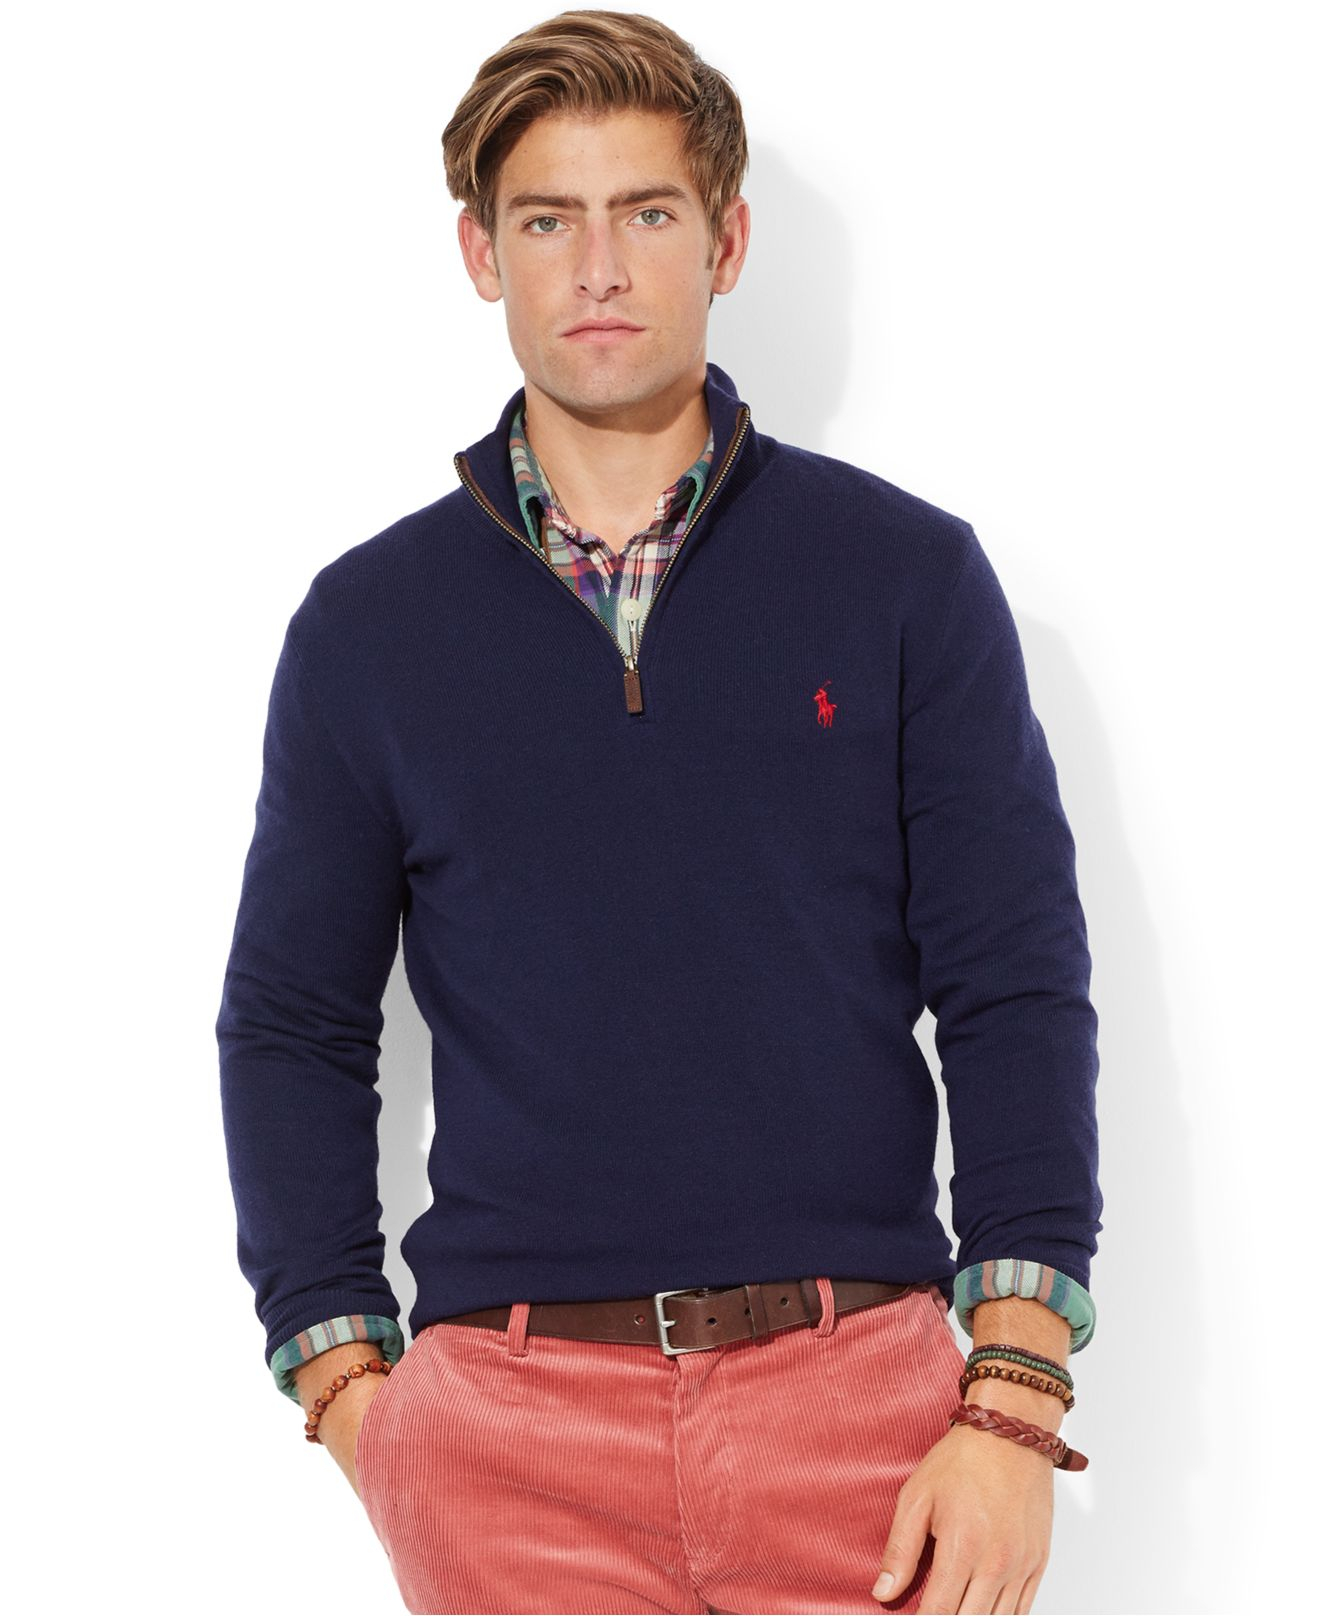 Polo Ralph Lauren Merino Wool Half-Zip Sweater in Blue for Men - Lyst